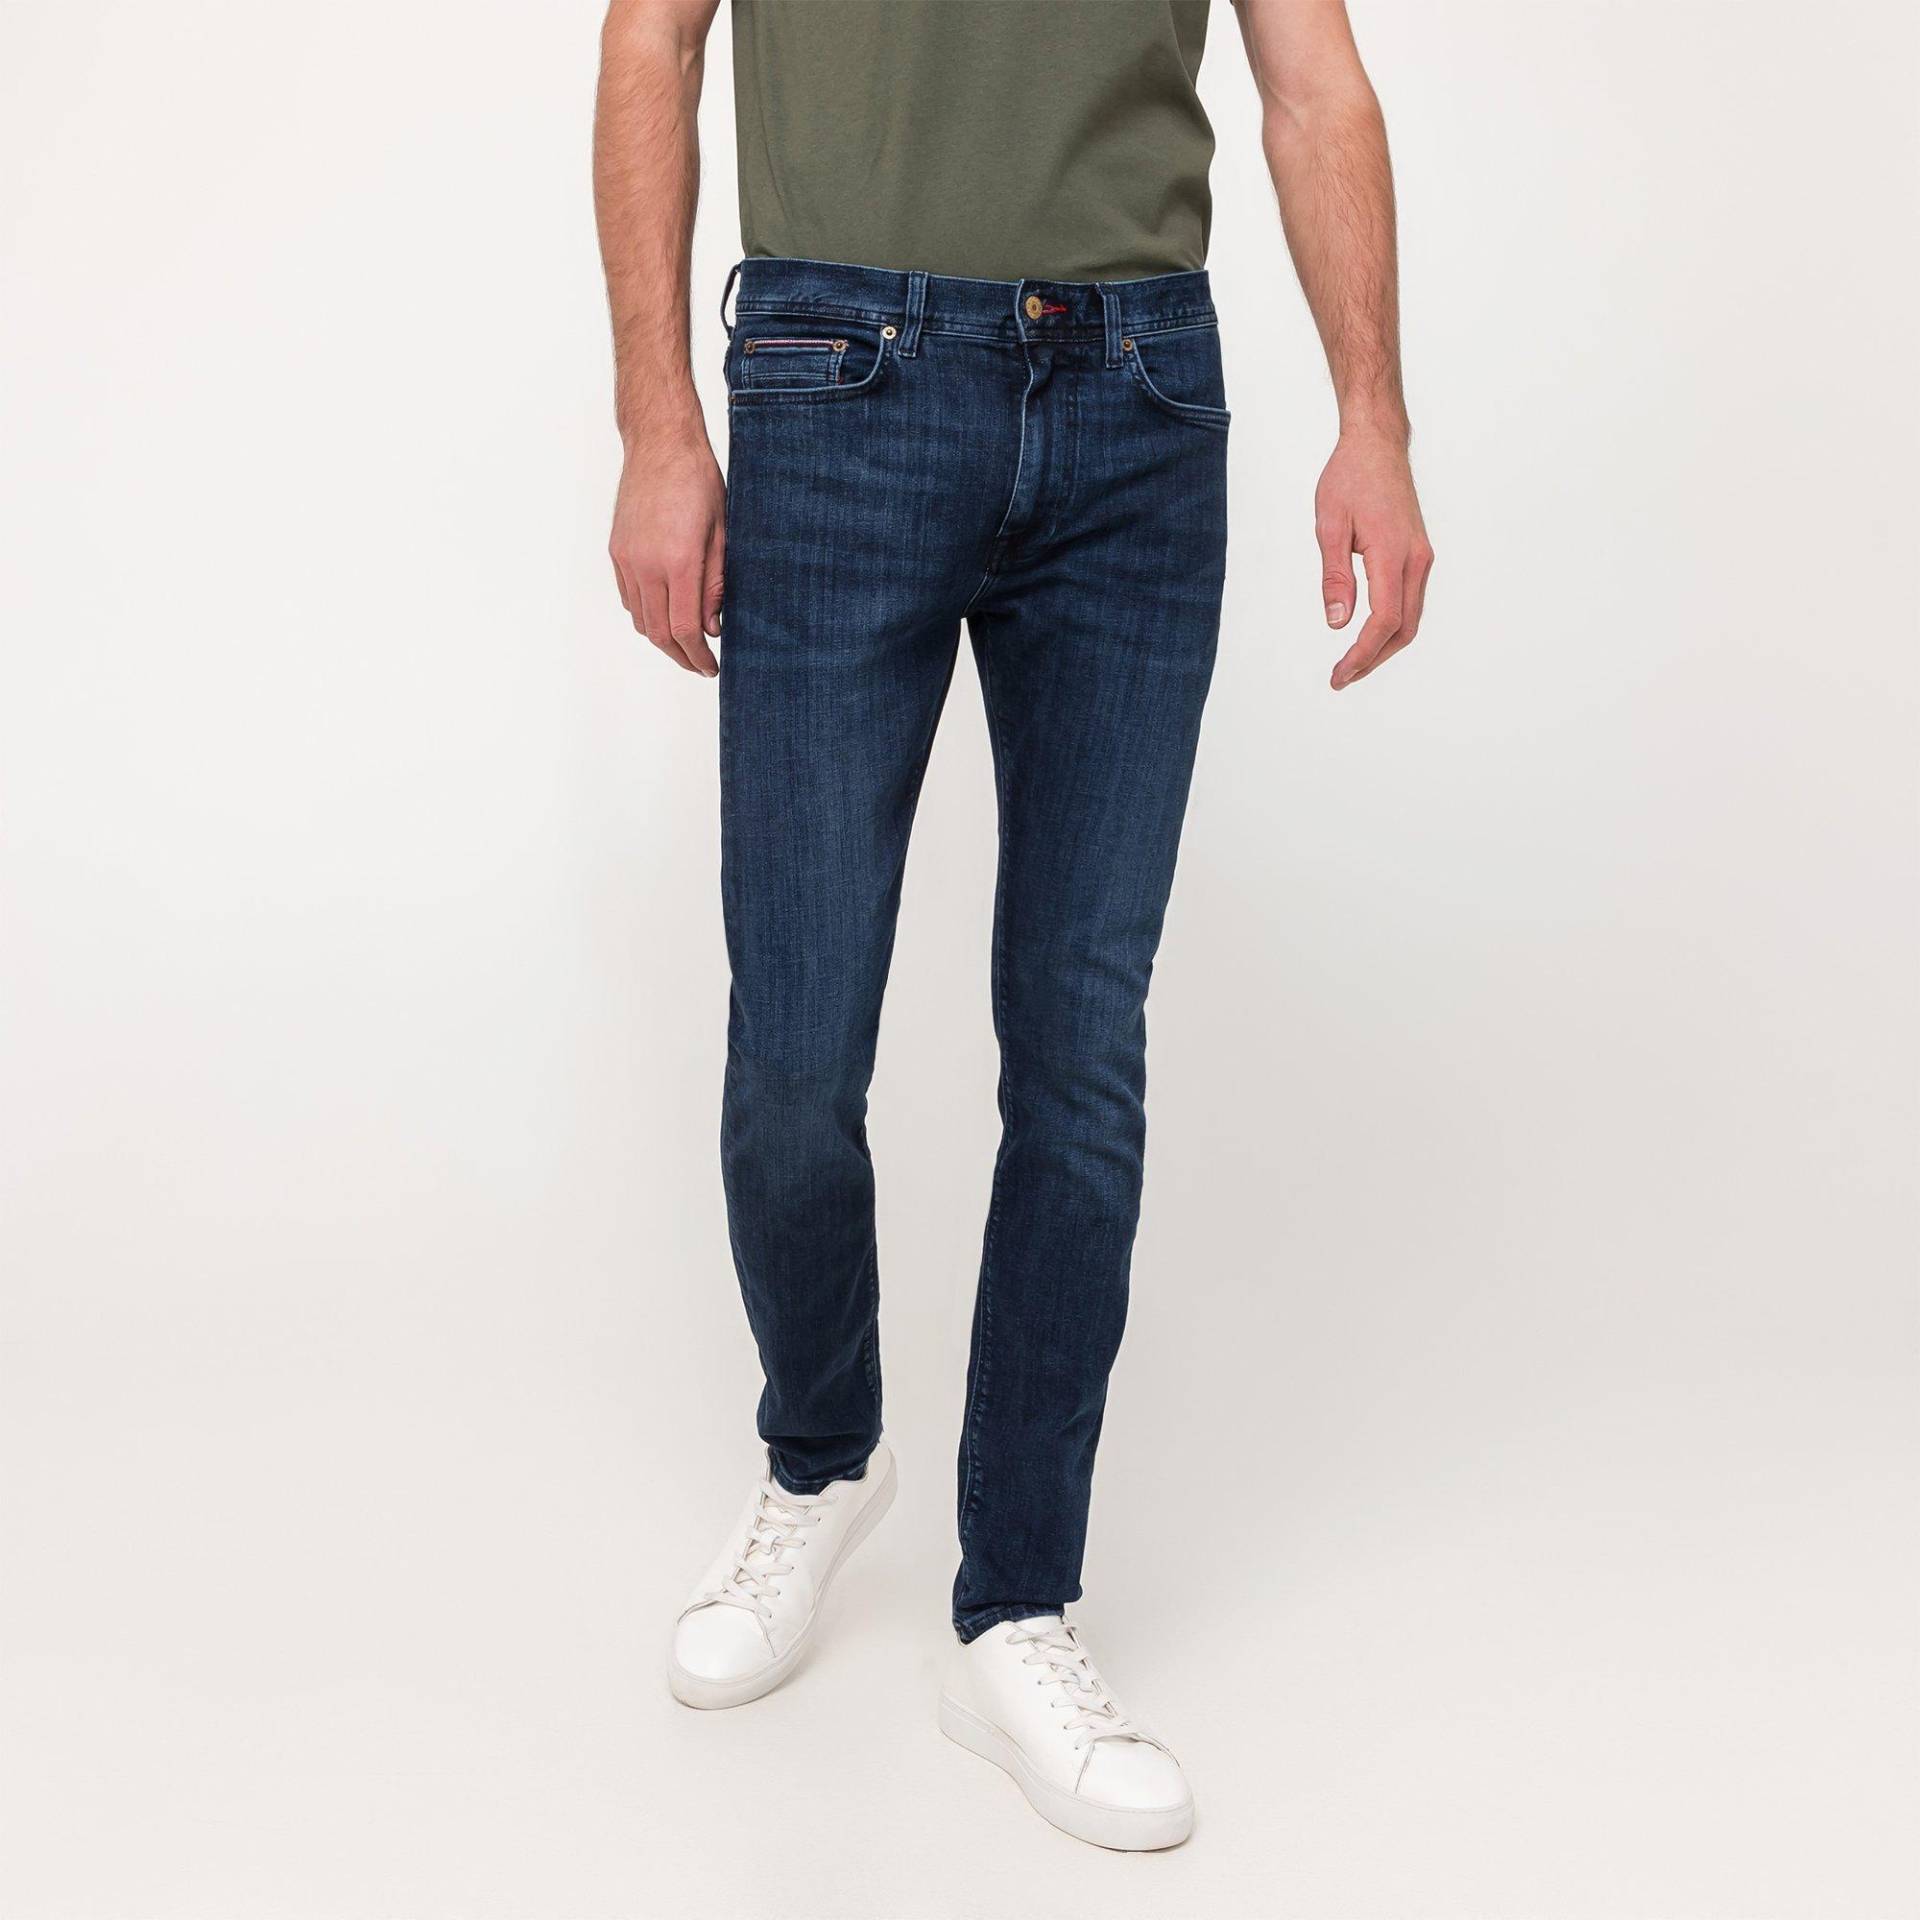 Jeans, Slim Fit Herren Indigo L34/W34 von TOMMY HILFIGER